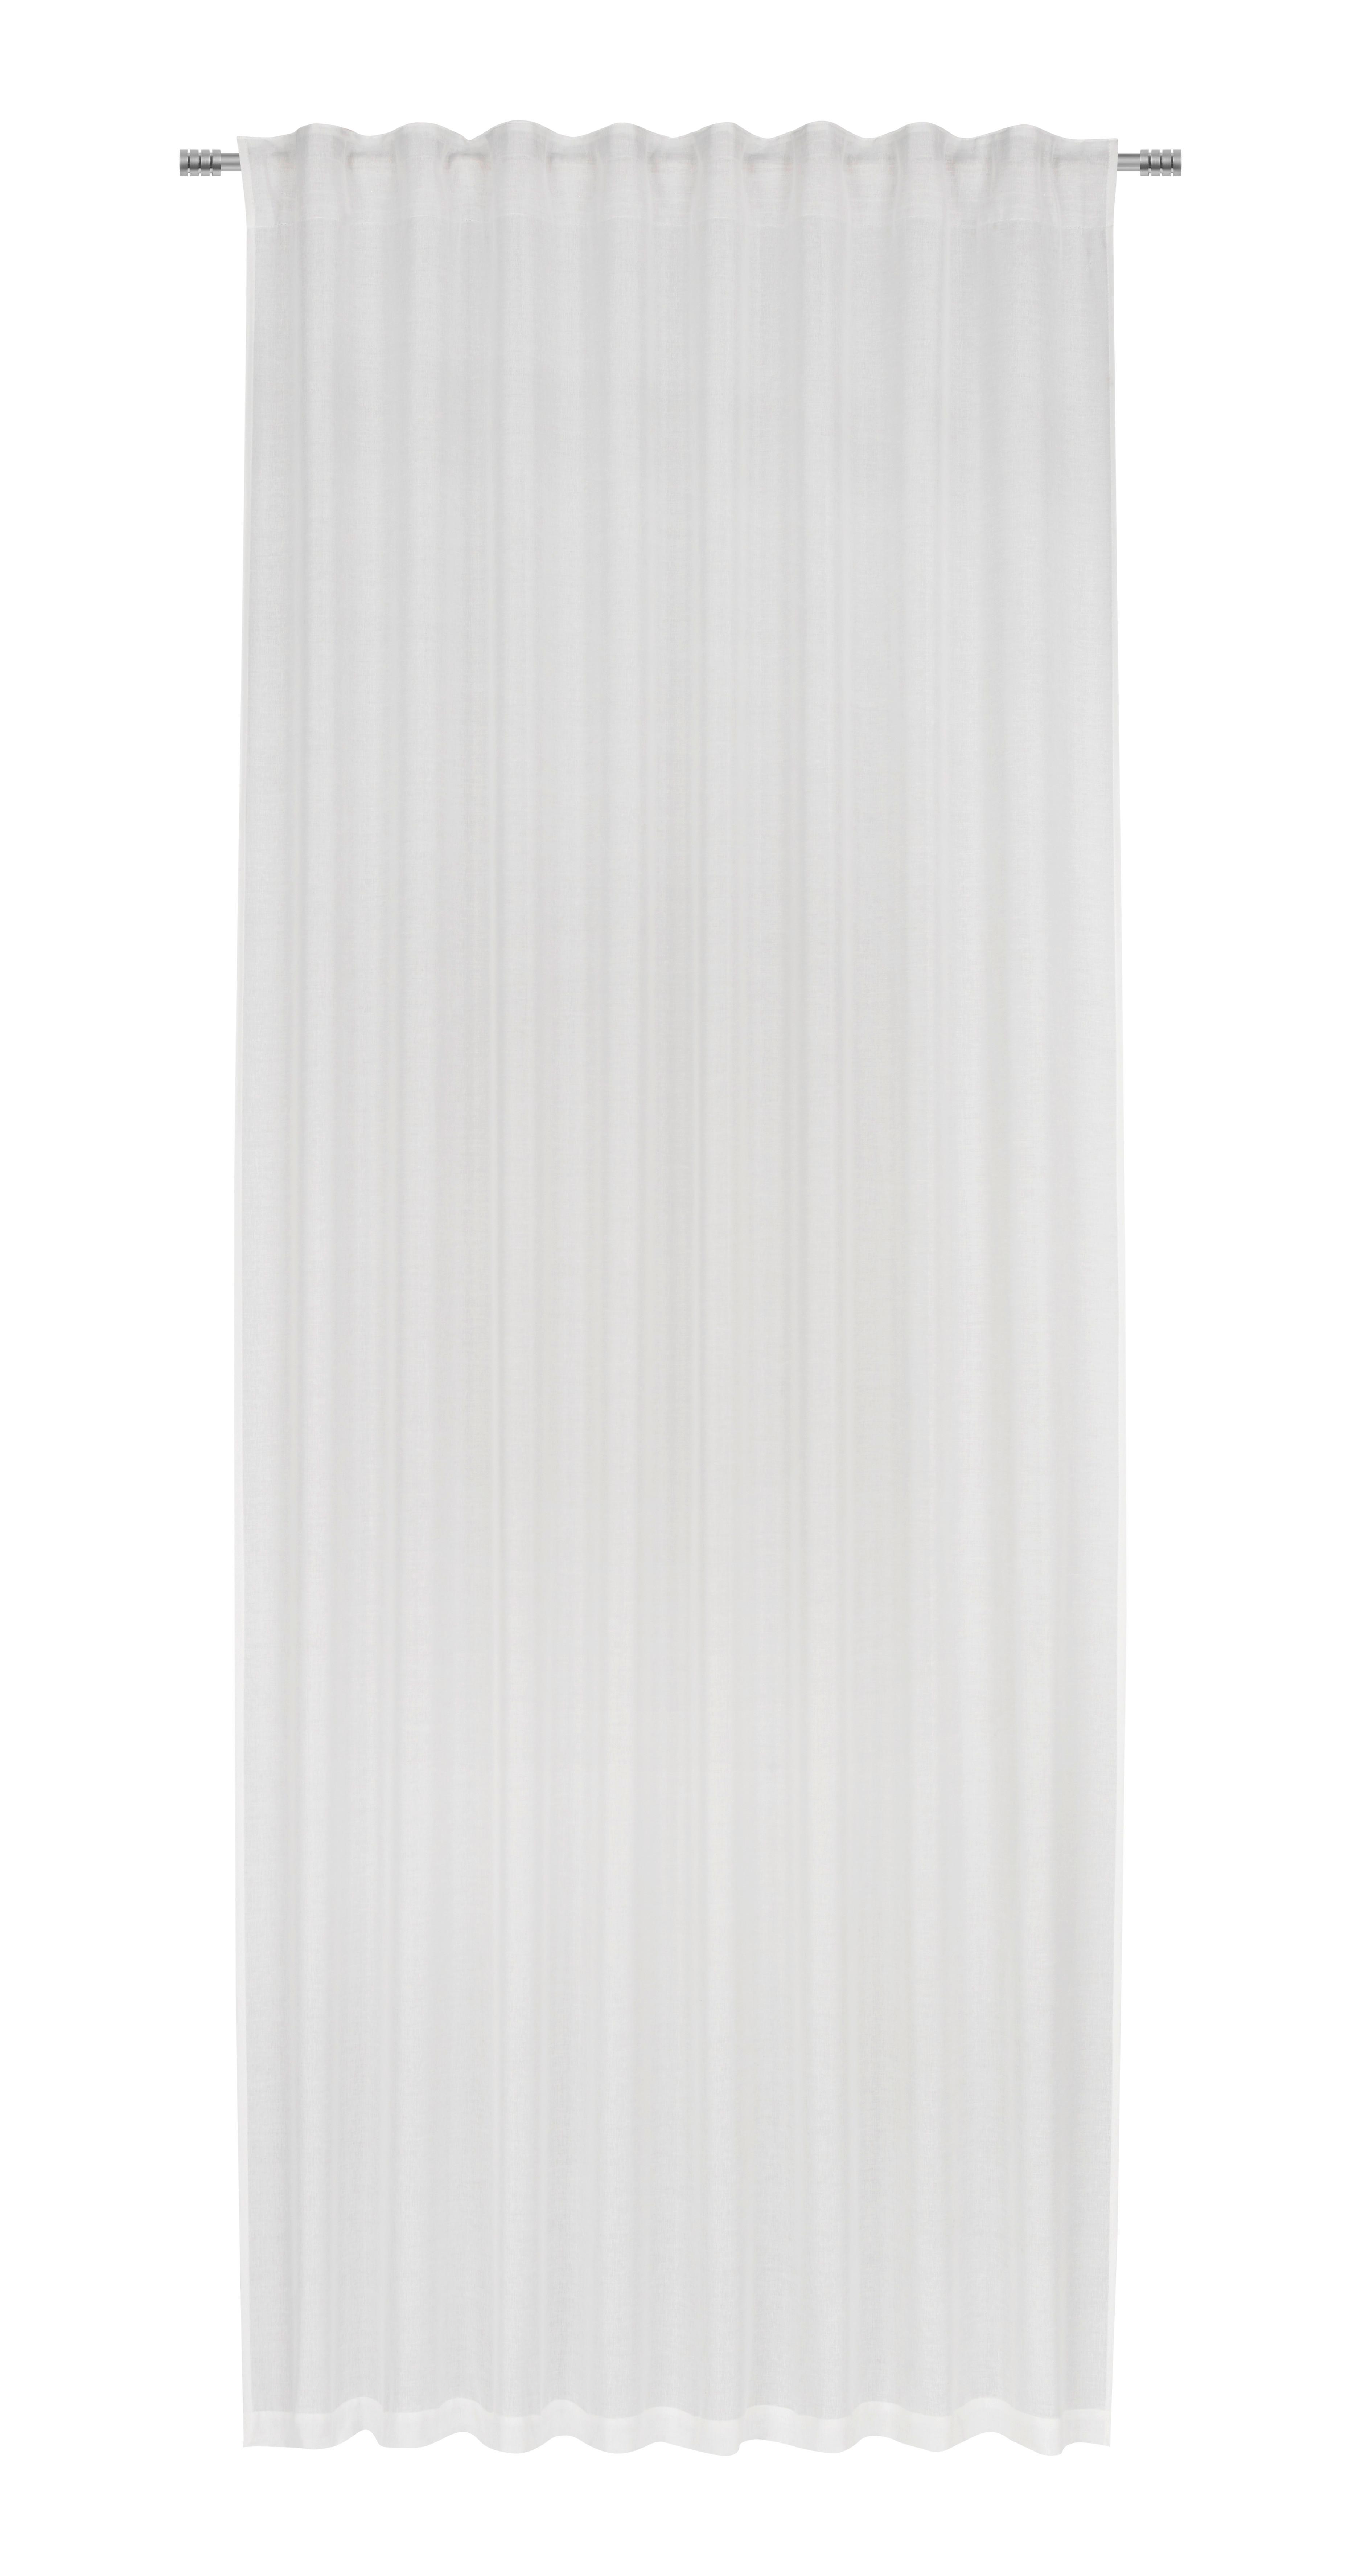 Fertigvorhang Elisa in Weiß ca. 135x255cm - Weiß, KONVENTIONELL, Textil (135/255cm) - Premium Living